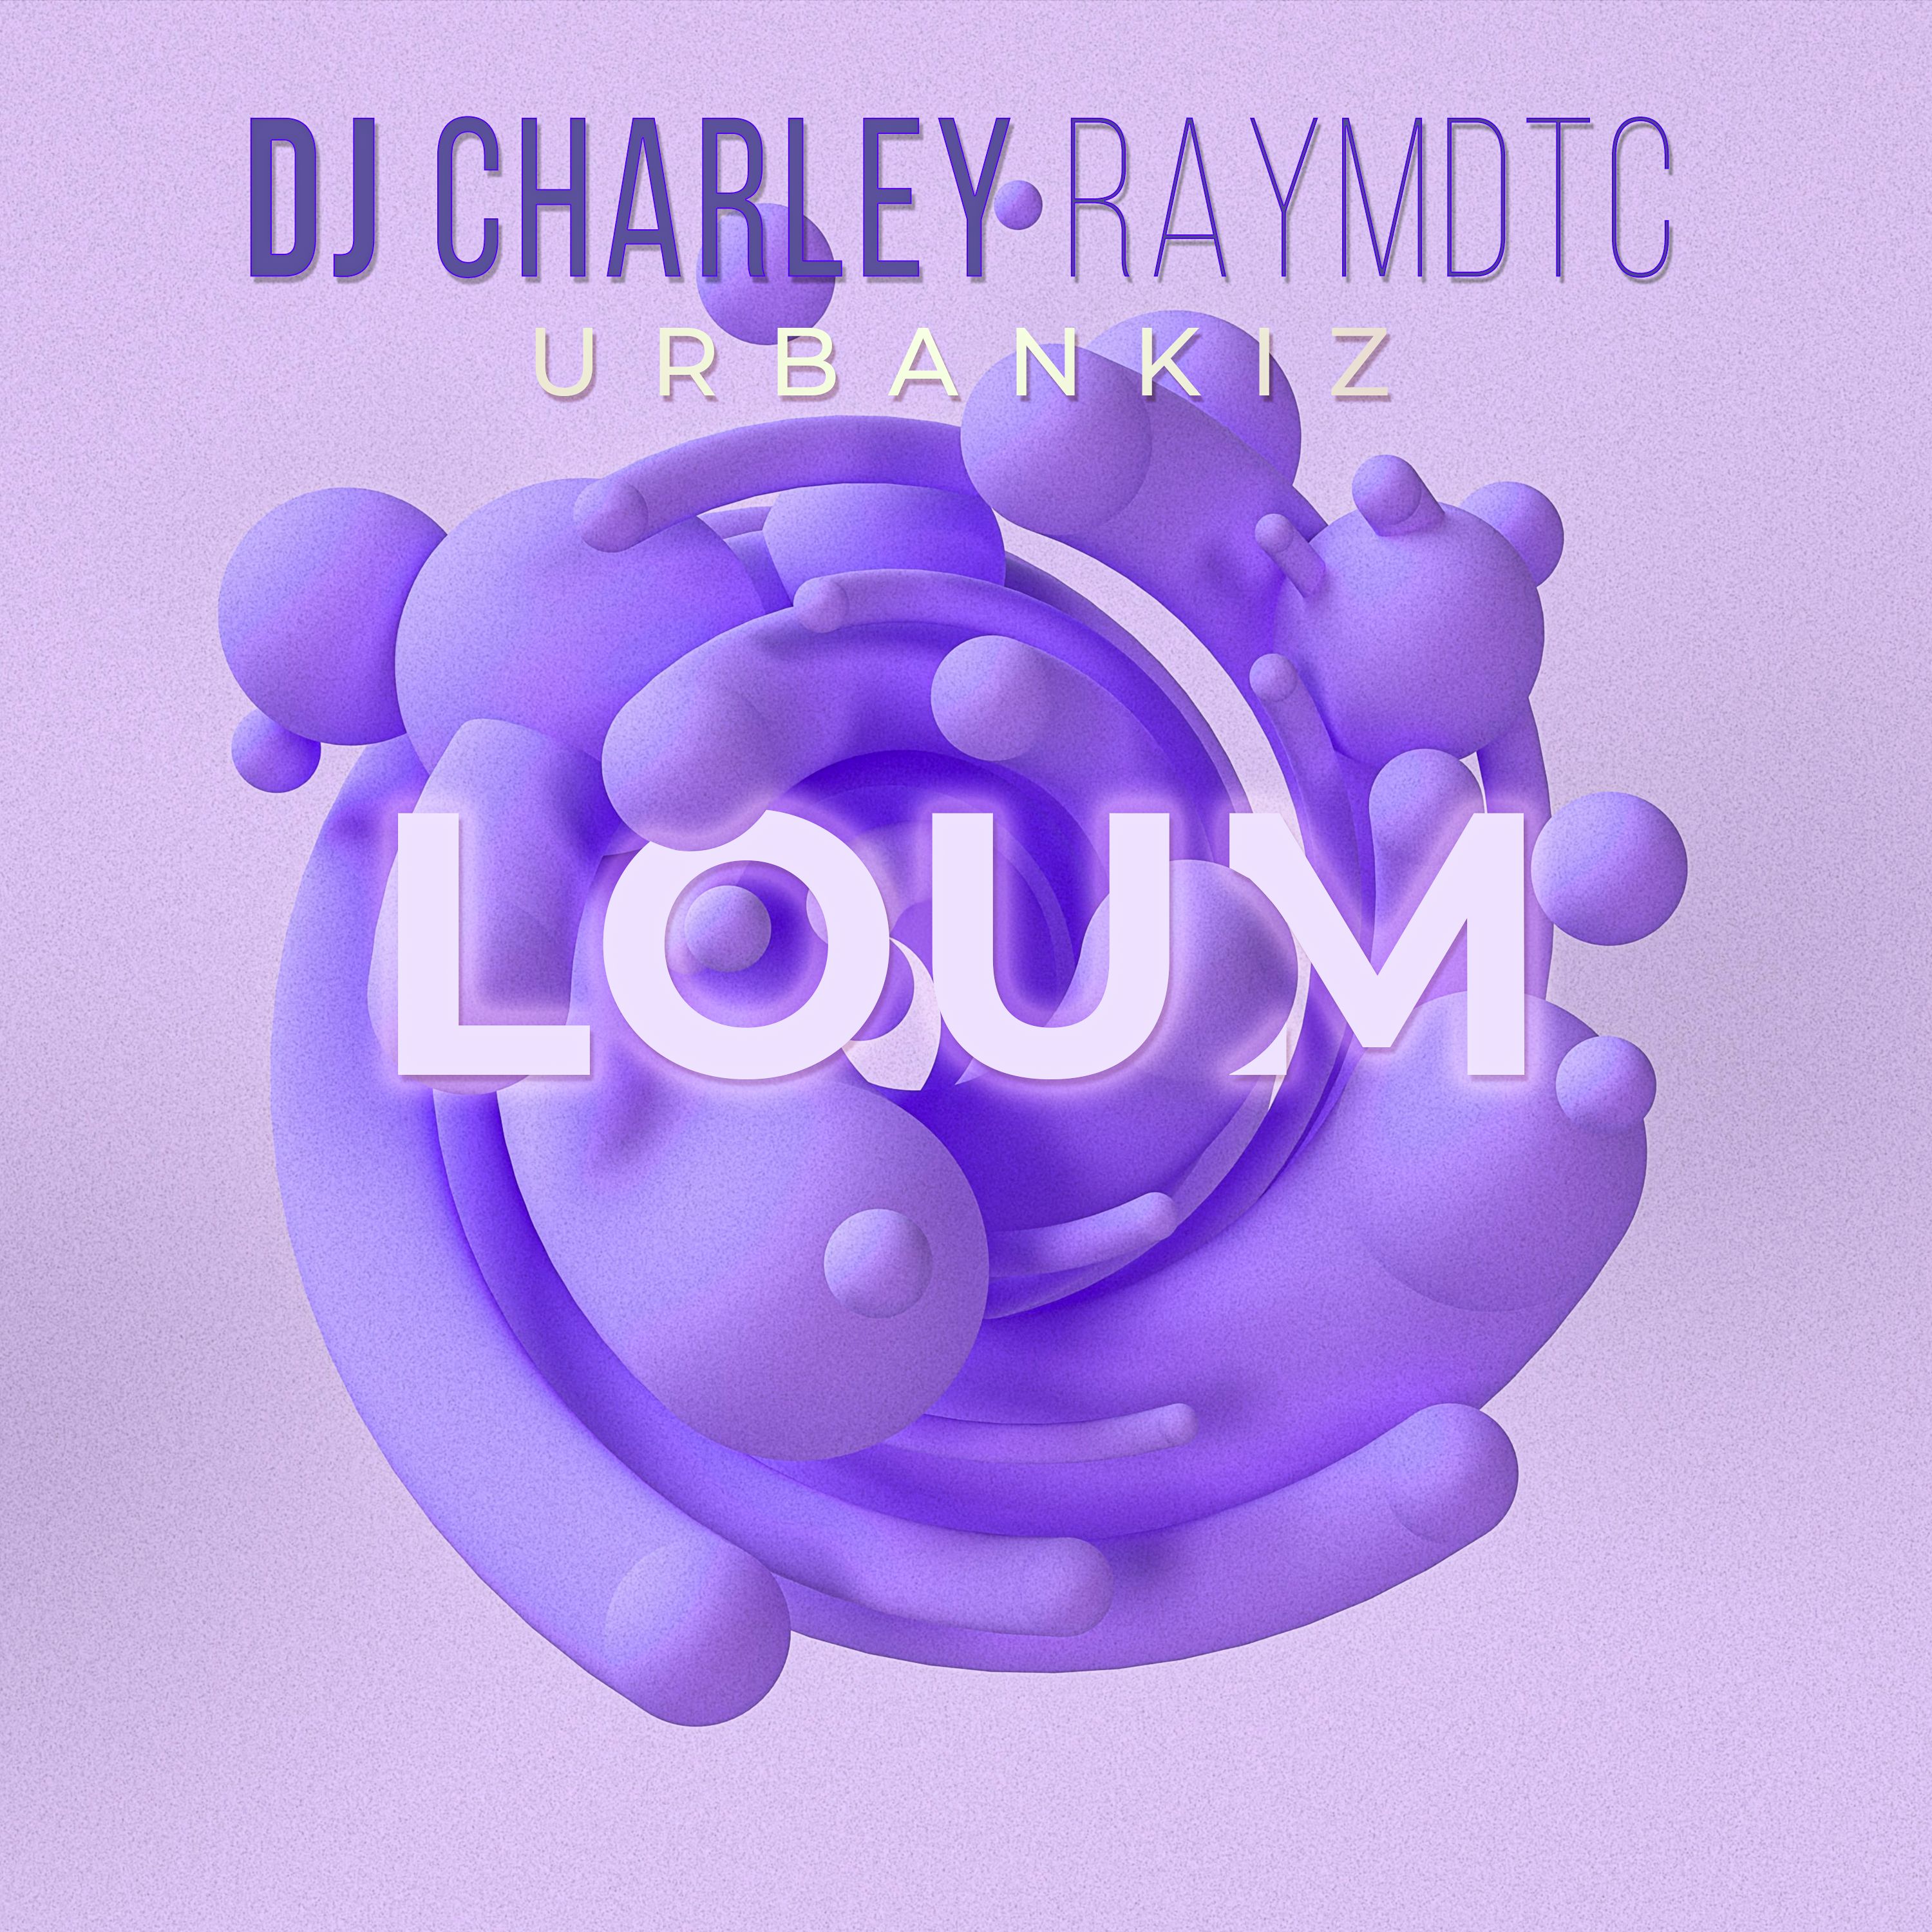 Tikiake DJ Charley Raymdtc - Loum (Ubankiz 2022 )